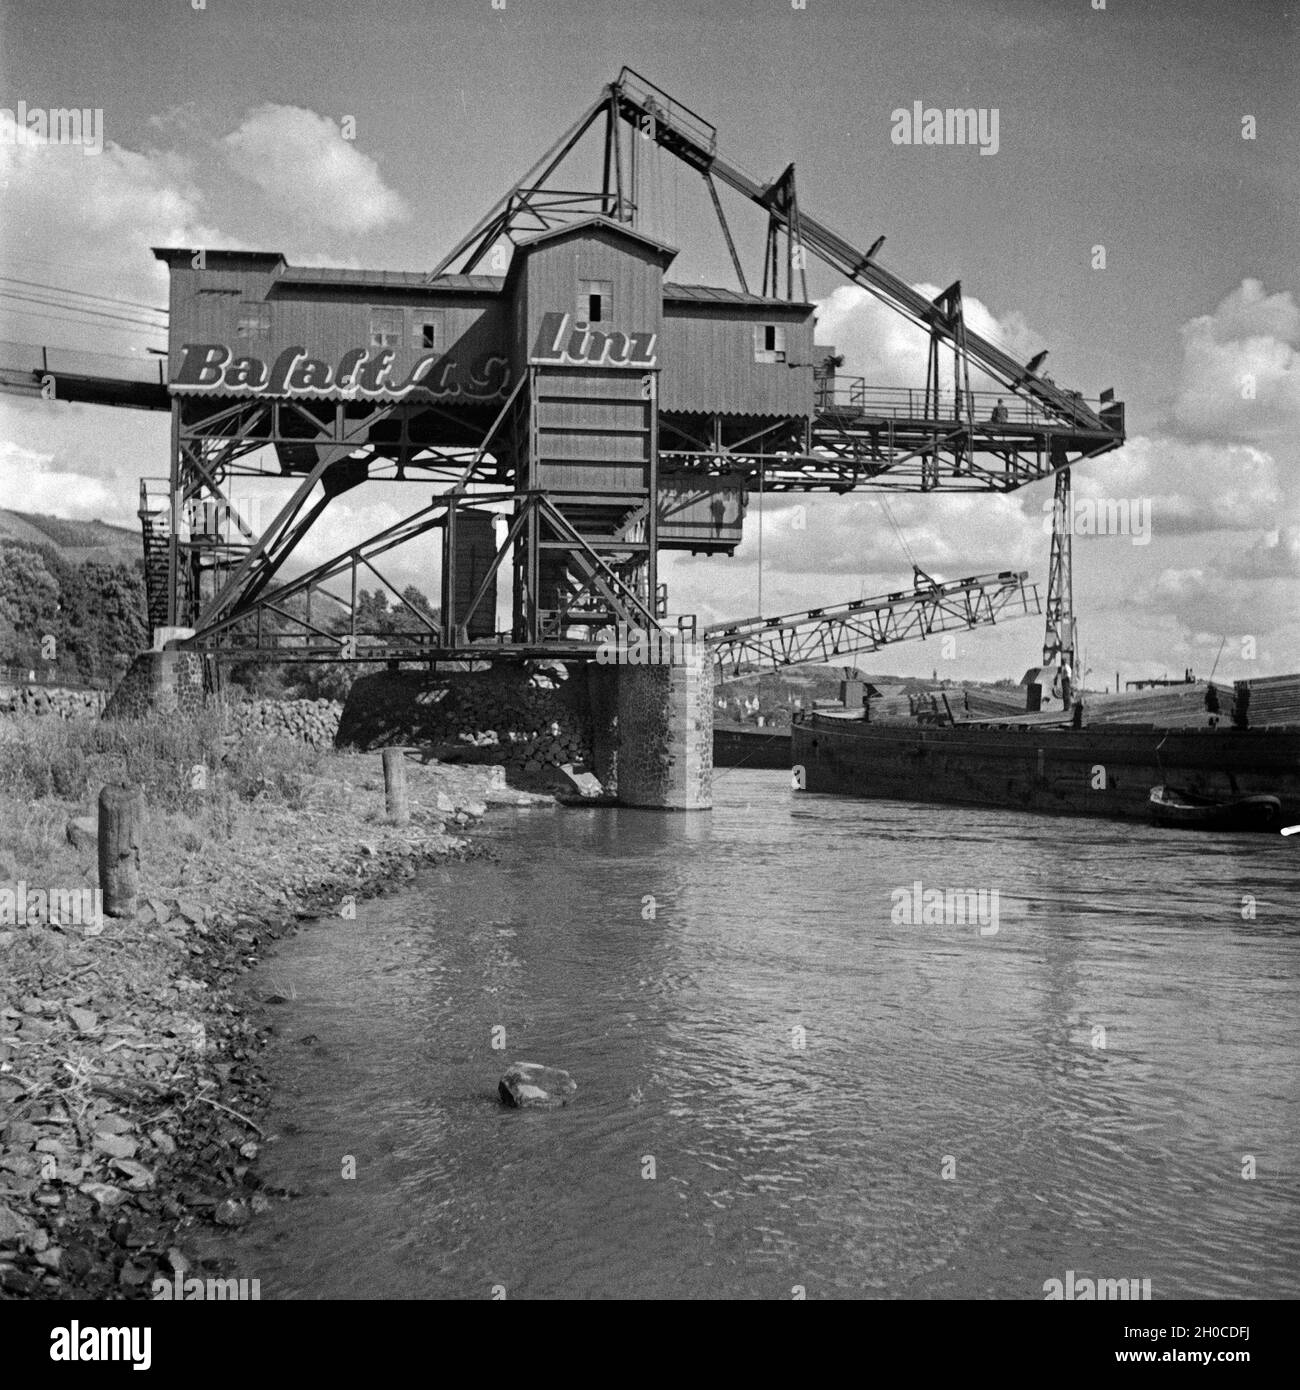 Förderwerk der Basalt AG in Linz am Rhein, Deutschland 1930er Jahre. Headgear of the Basalt AG company at Linz on river Rhine, Germany 1930s. Stock Photo